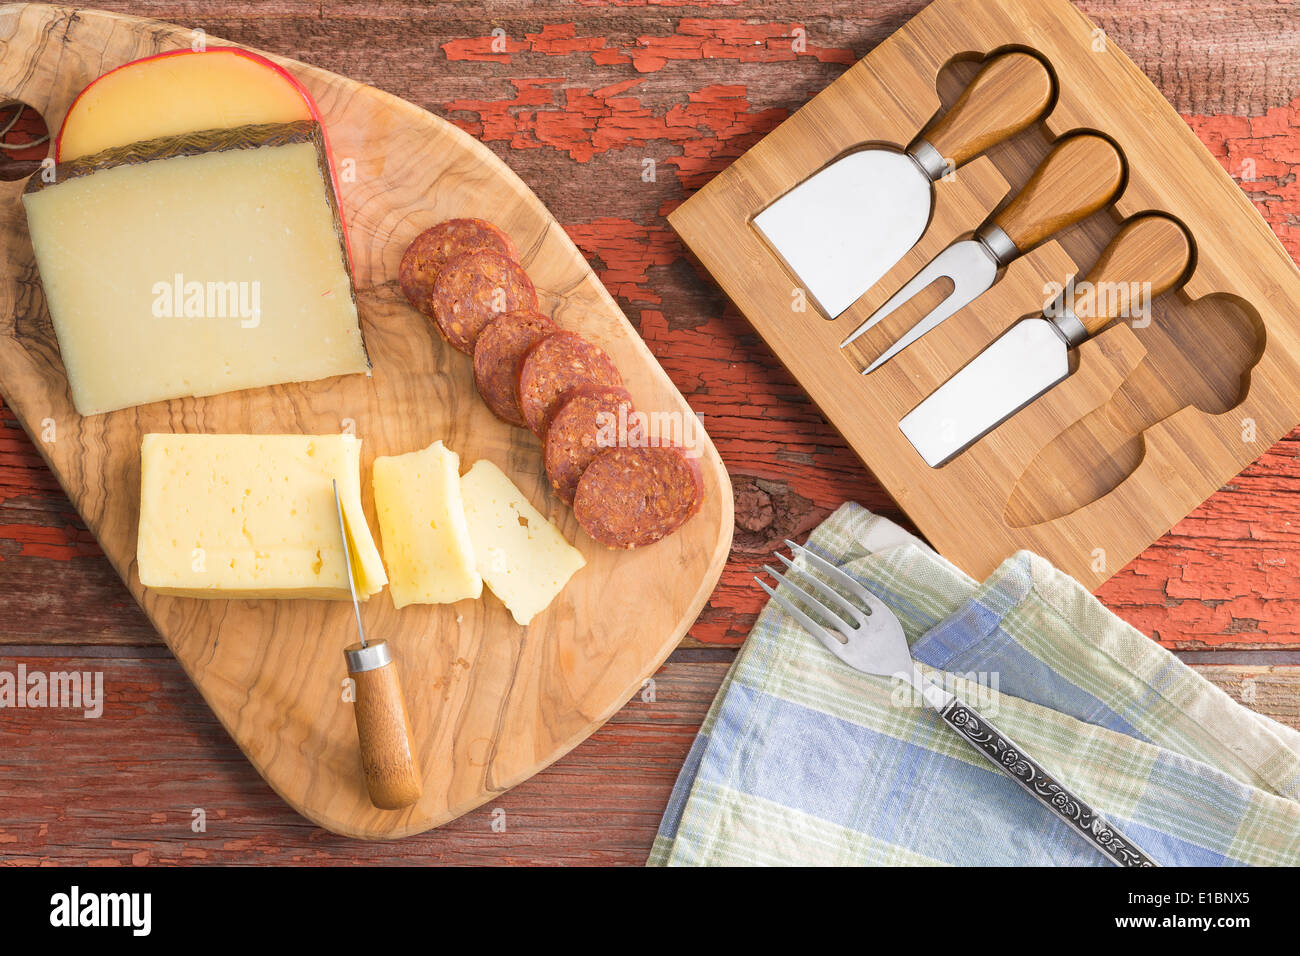 Vue de dessus d'un plateau de fromages avec un assortiment de fromages havarti, y compris gouda et manchego servi avec des tranches de chorizo sur une Banque D'Images